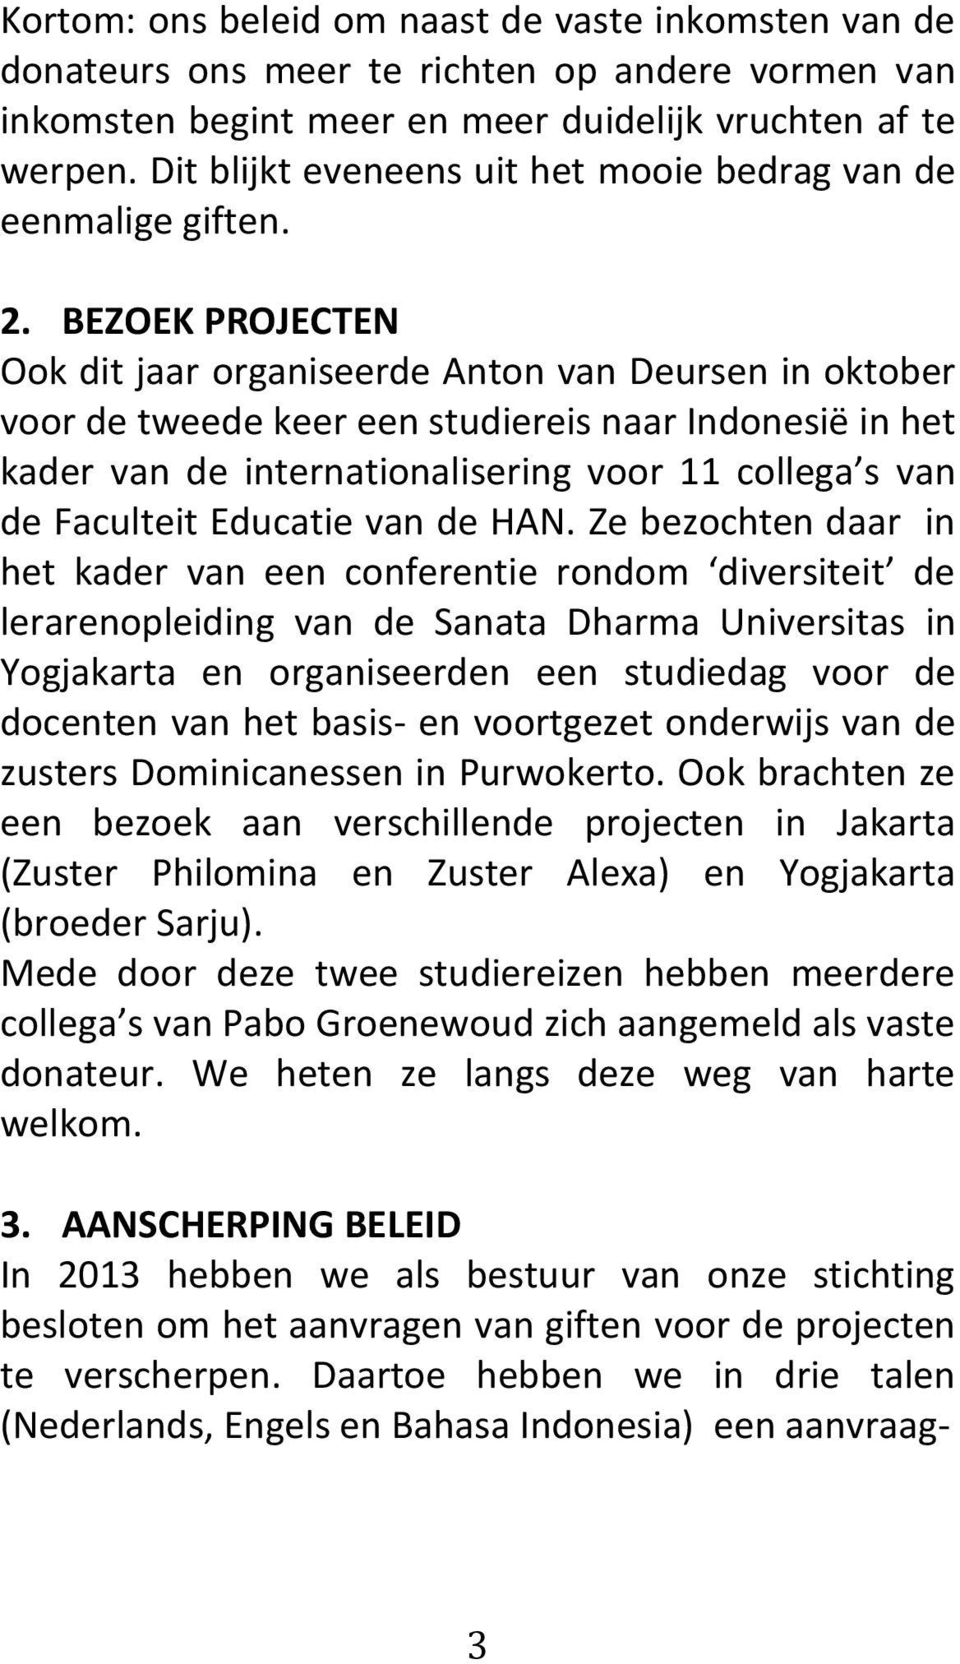 BEZOEK PROJECTEN Ook dit jaar organiseerde Anton van Deursen in oktober voor de tweede keer een studiereis naar Indonesië in het kader van de internationalisering voor 11 collega s van de Faculteit